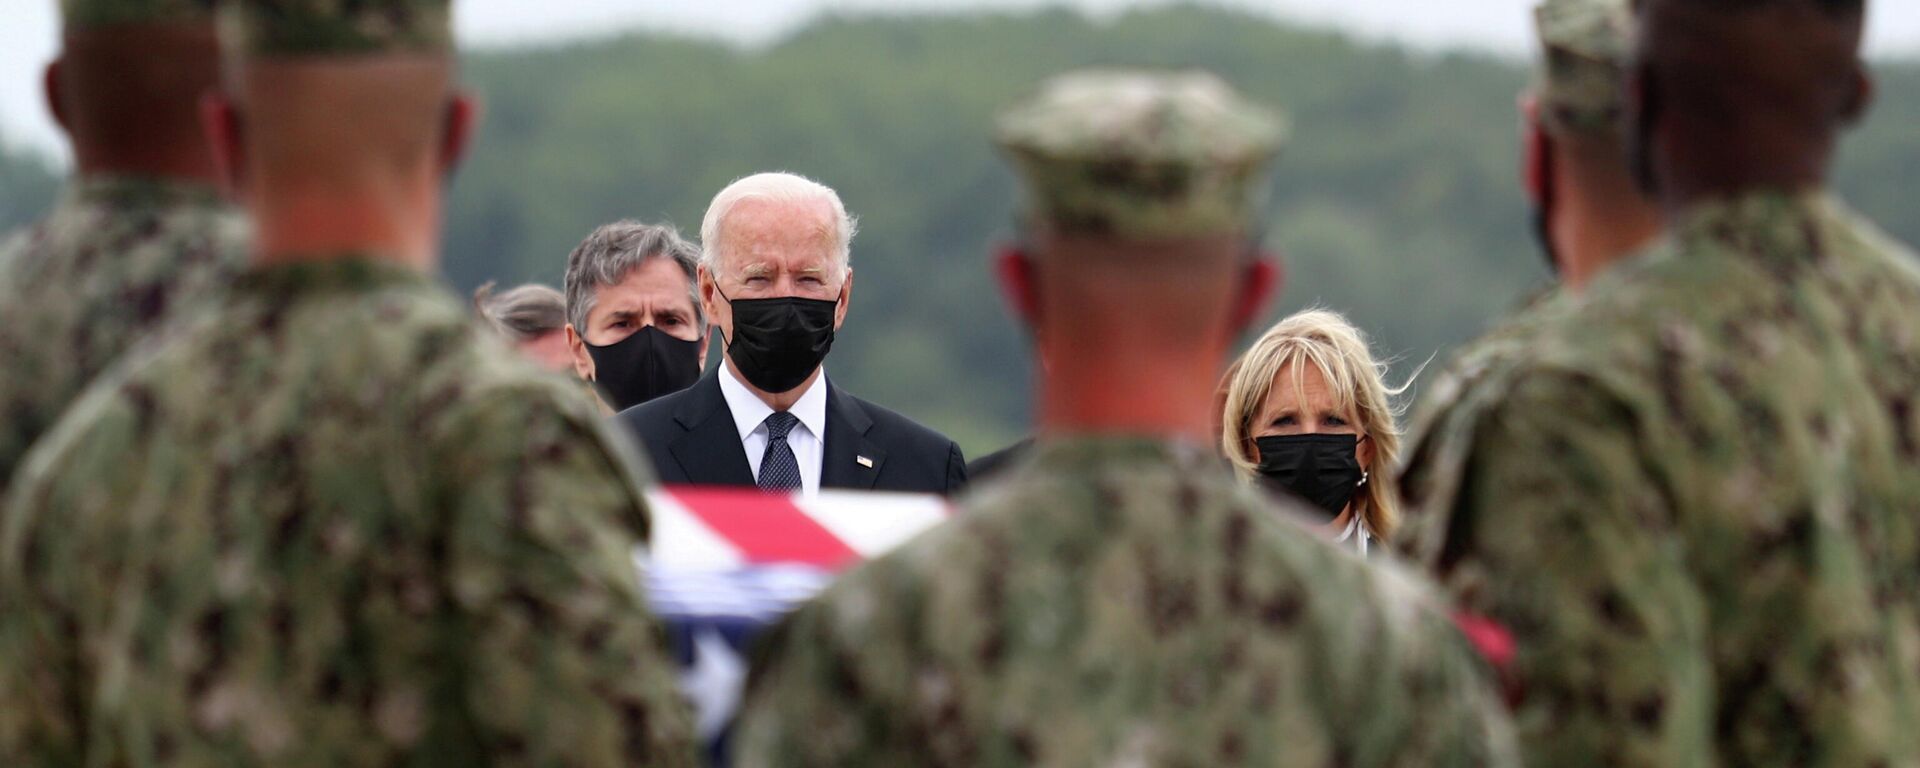 Joe Biden, Afganistan'da ölen ABD askerlerinin cenazelerini karşıladı - Sputnik Türkiye, 1920, 29.08.2021